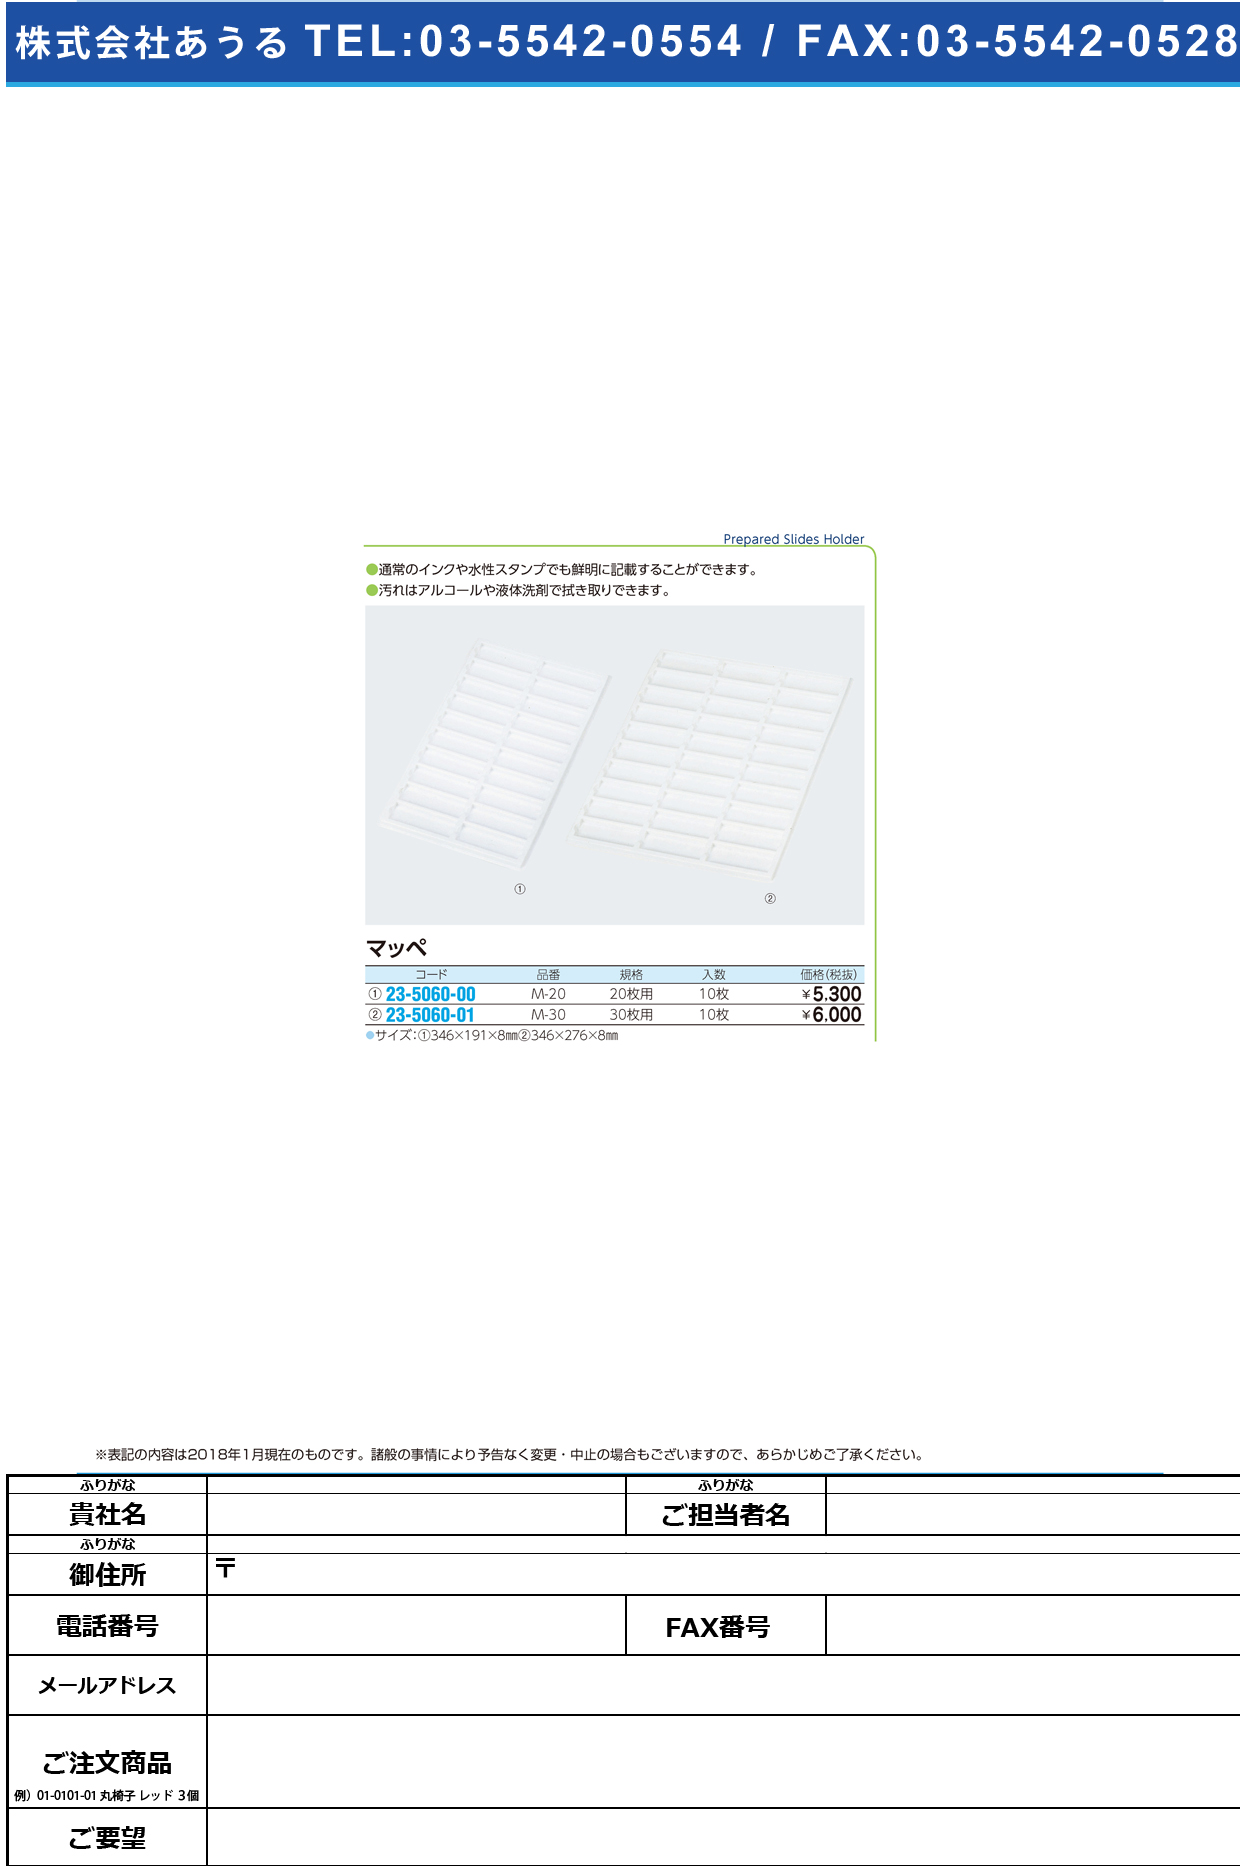 (23-5060-00)松浪マッペ（２０枚用） M-20(10ﾏｲｲﾘ) ﾏﾂﾅﾐﾏｯﾍﾟ20ﾏｲﾖｳ【1箱単位】【2018年カタログ商品】